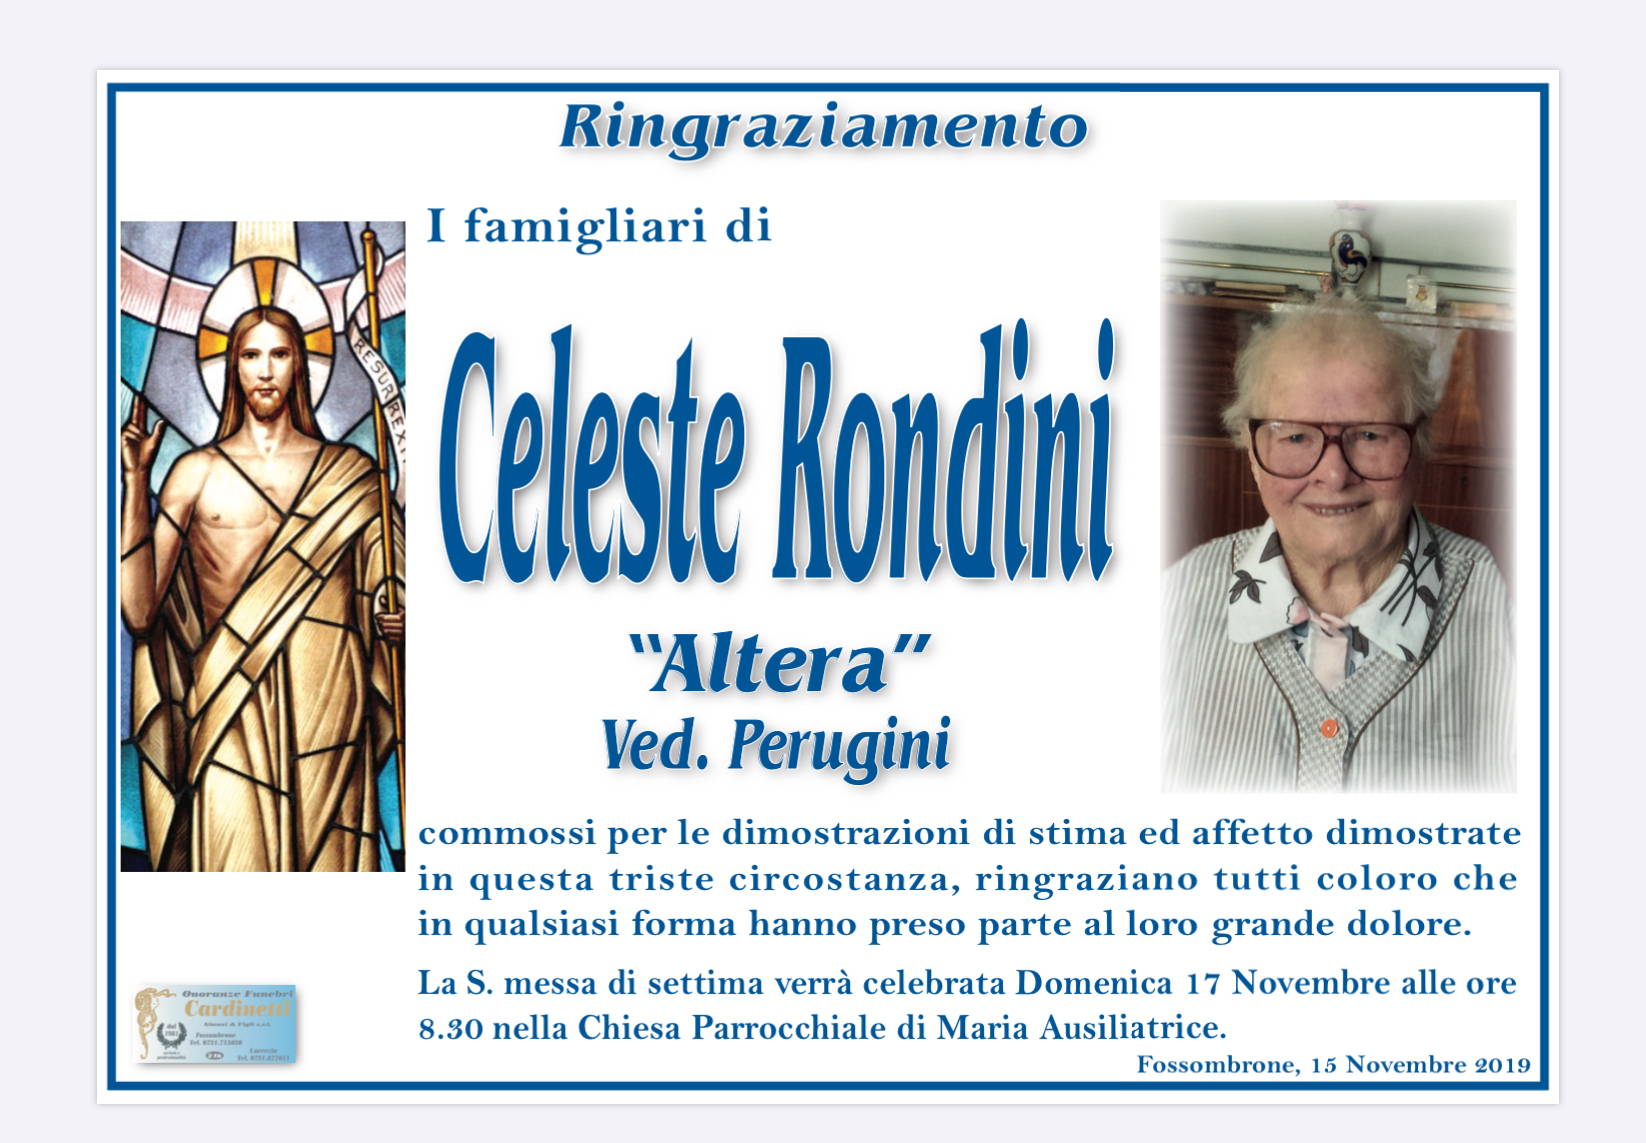 Celeste Rondini